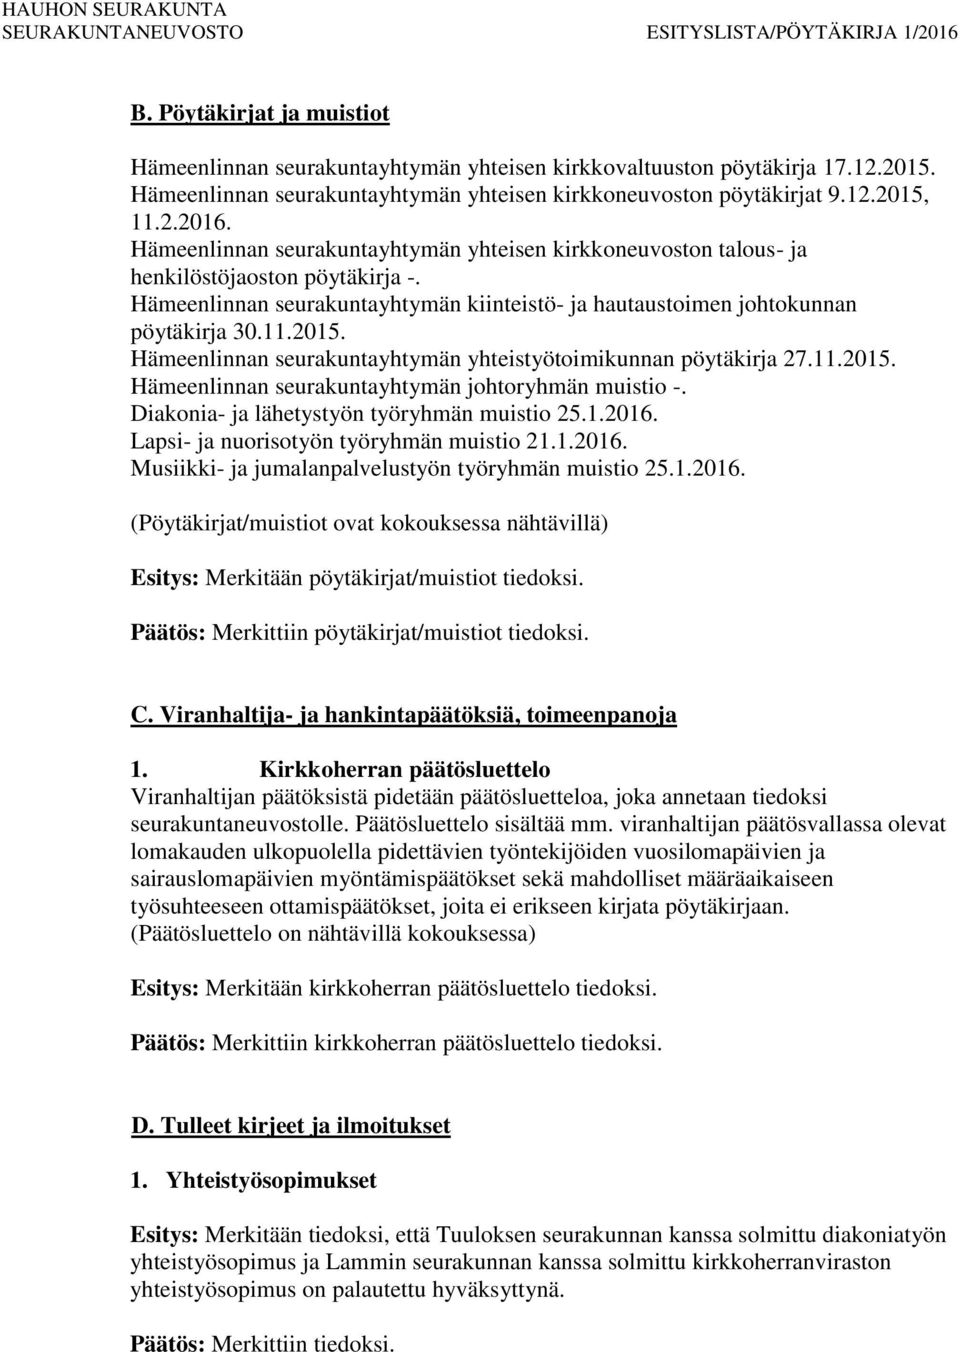 Hämeenlinnan seurakuntayhtymän yhteistyötoimikunnan pöytäkirja 27.11.2015. Hämeenlinnan seurakuntayhtymän johtoryhmän muistio -. Diakonia- ja lähetystyön työryhmän muistio 25.1.2016.